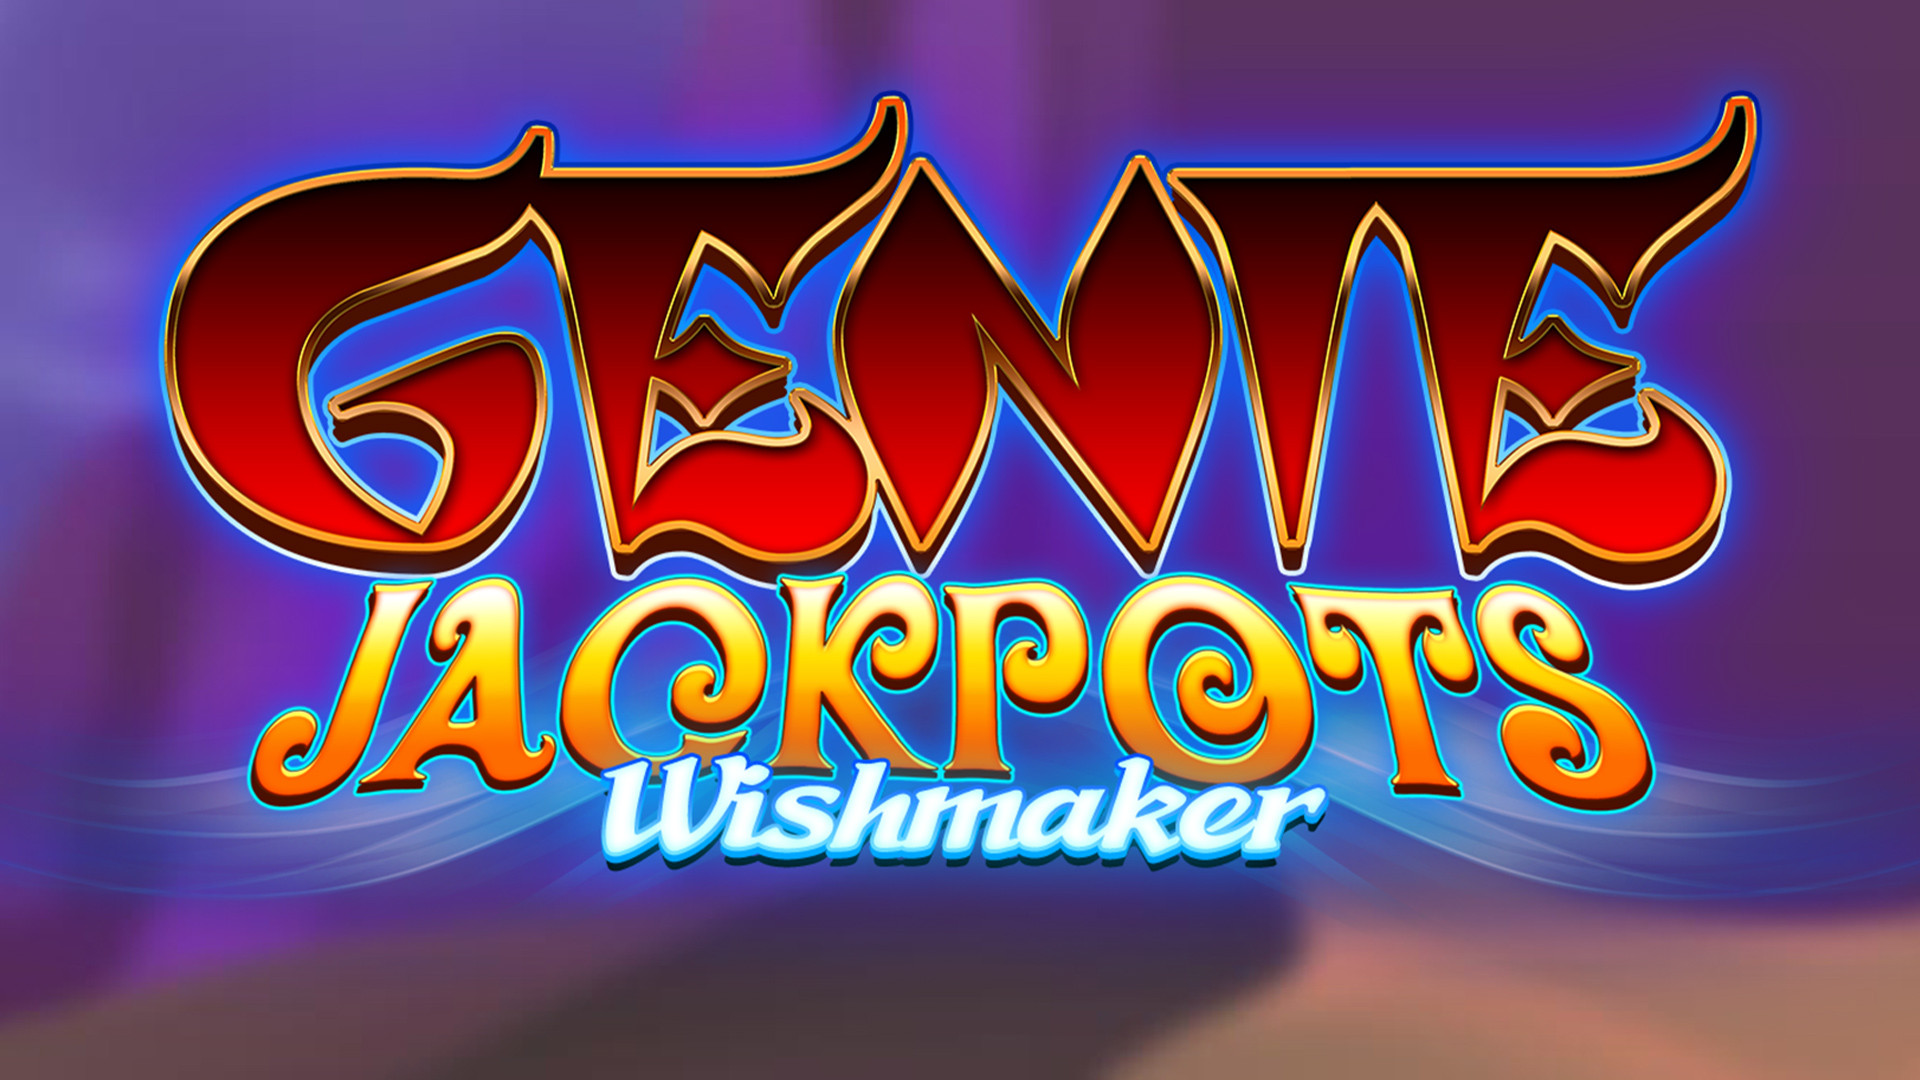 Genie Jackpot Wishmaker